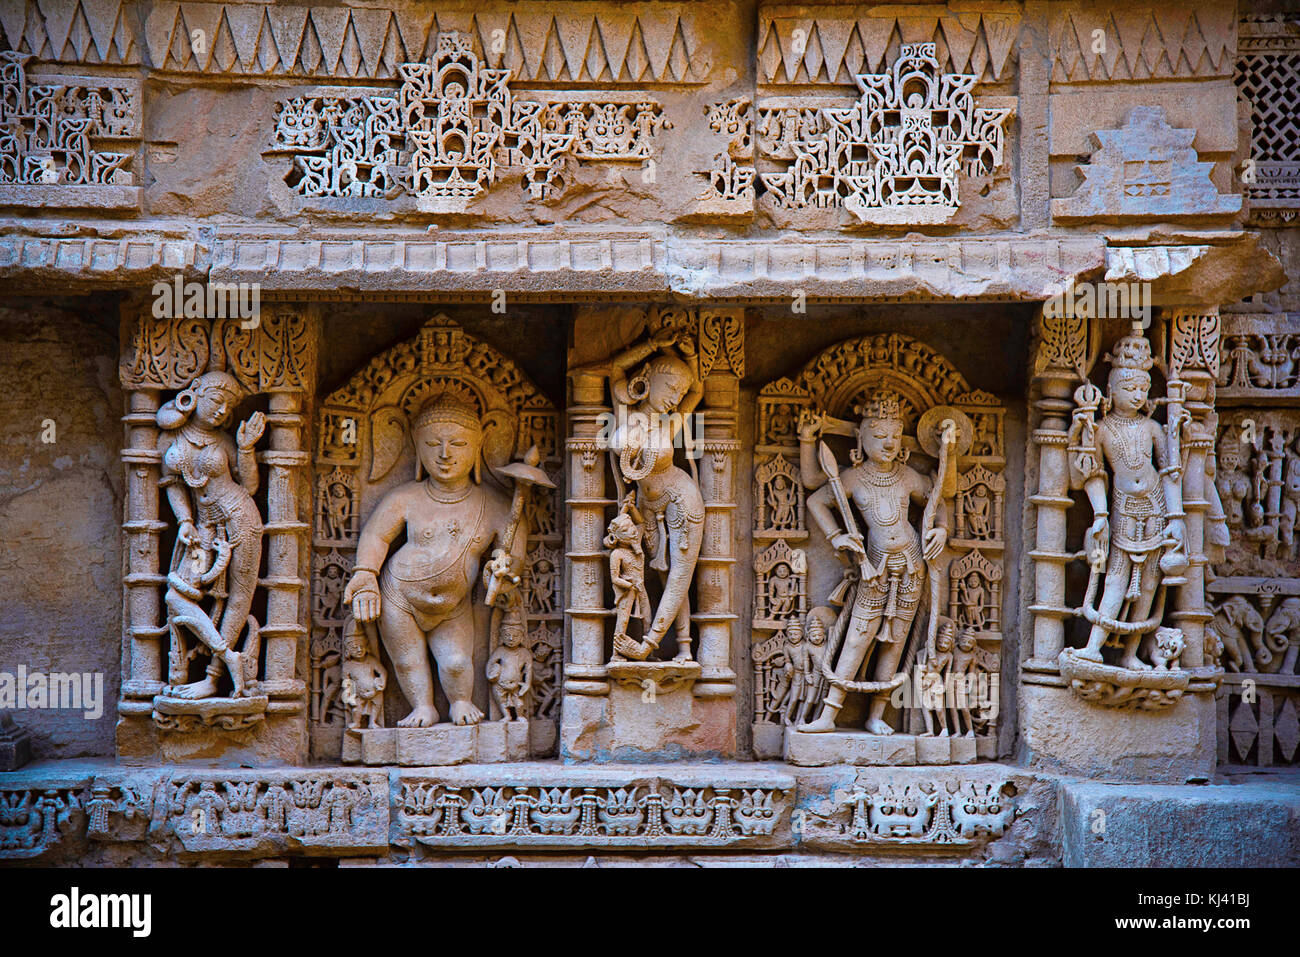 Les idoles sculptées de Vamana, Seigneur Parshuram entouré d'apsaras. Patan au Gujarat, en Inde. Banque D'Images